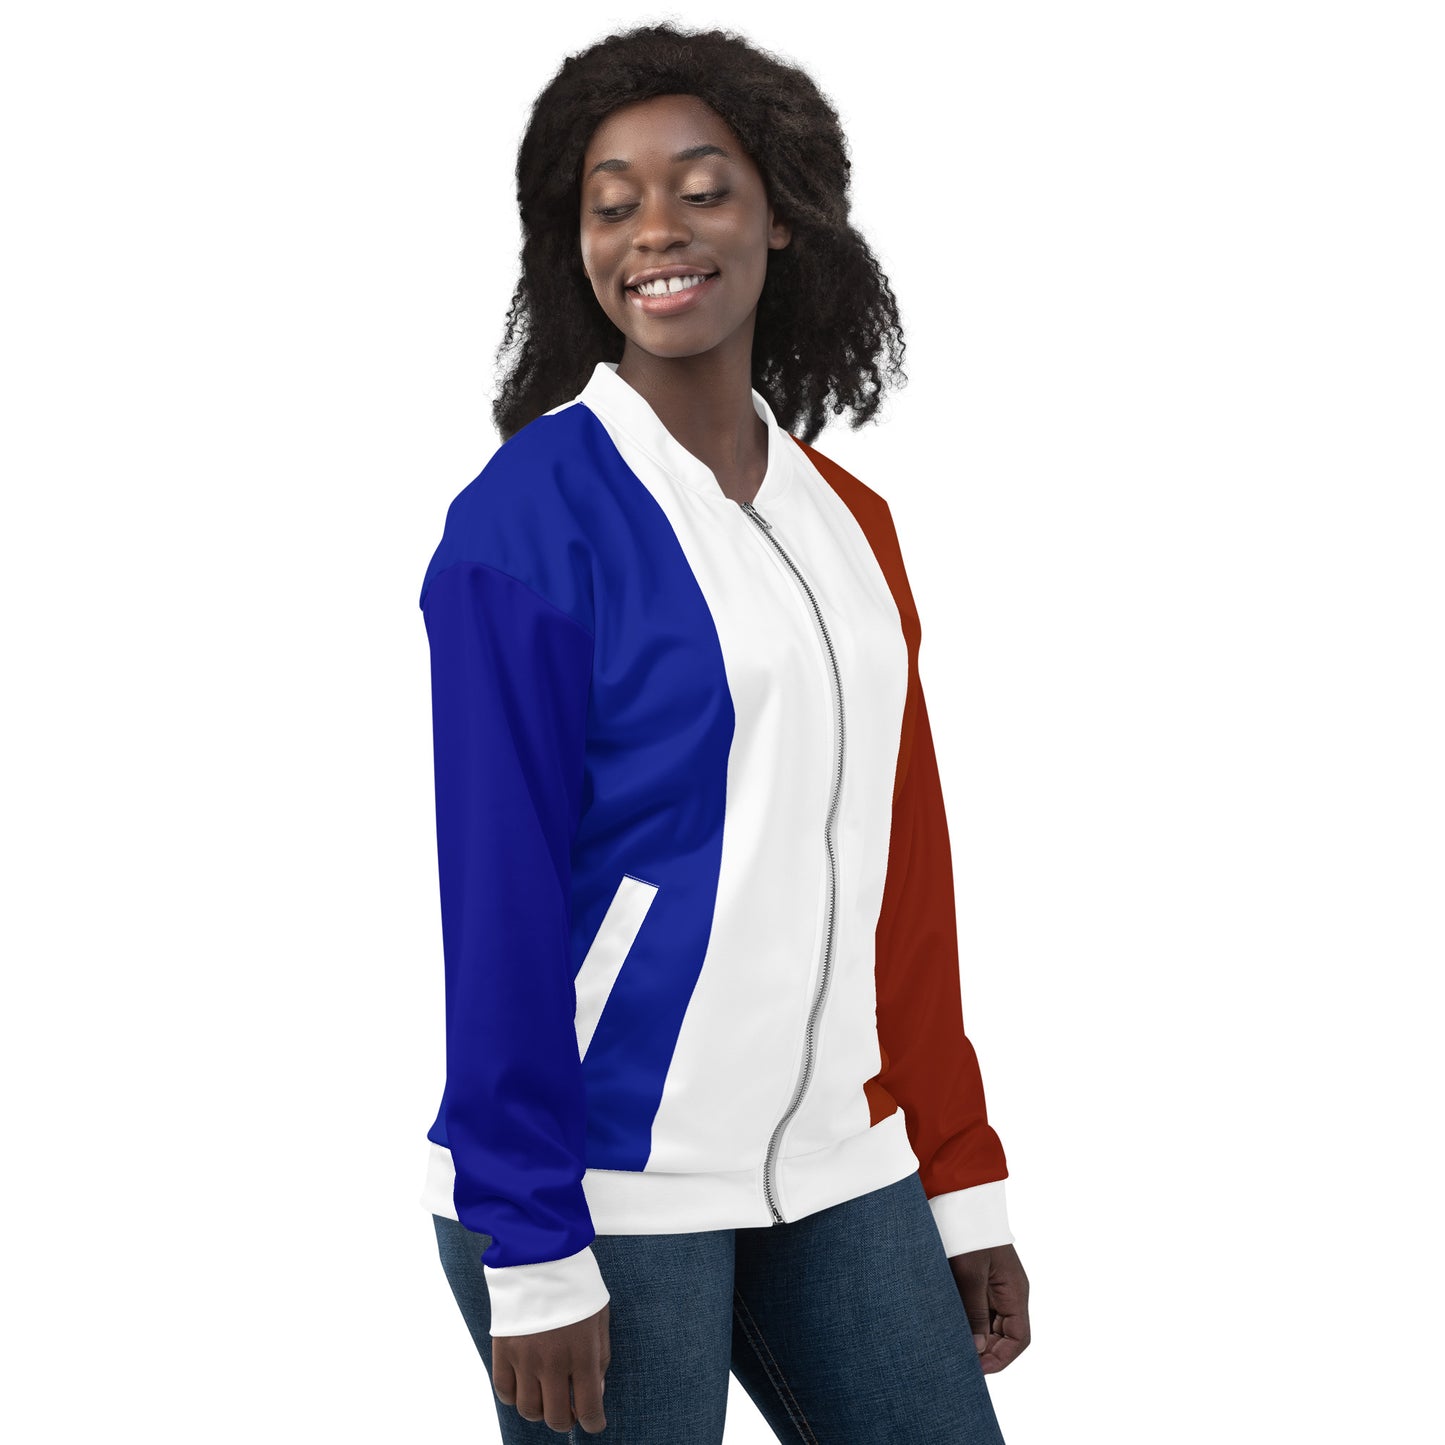 Frans jack / bomberjack met kleuren van de vlag van Frankrijk / unisex kleding